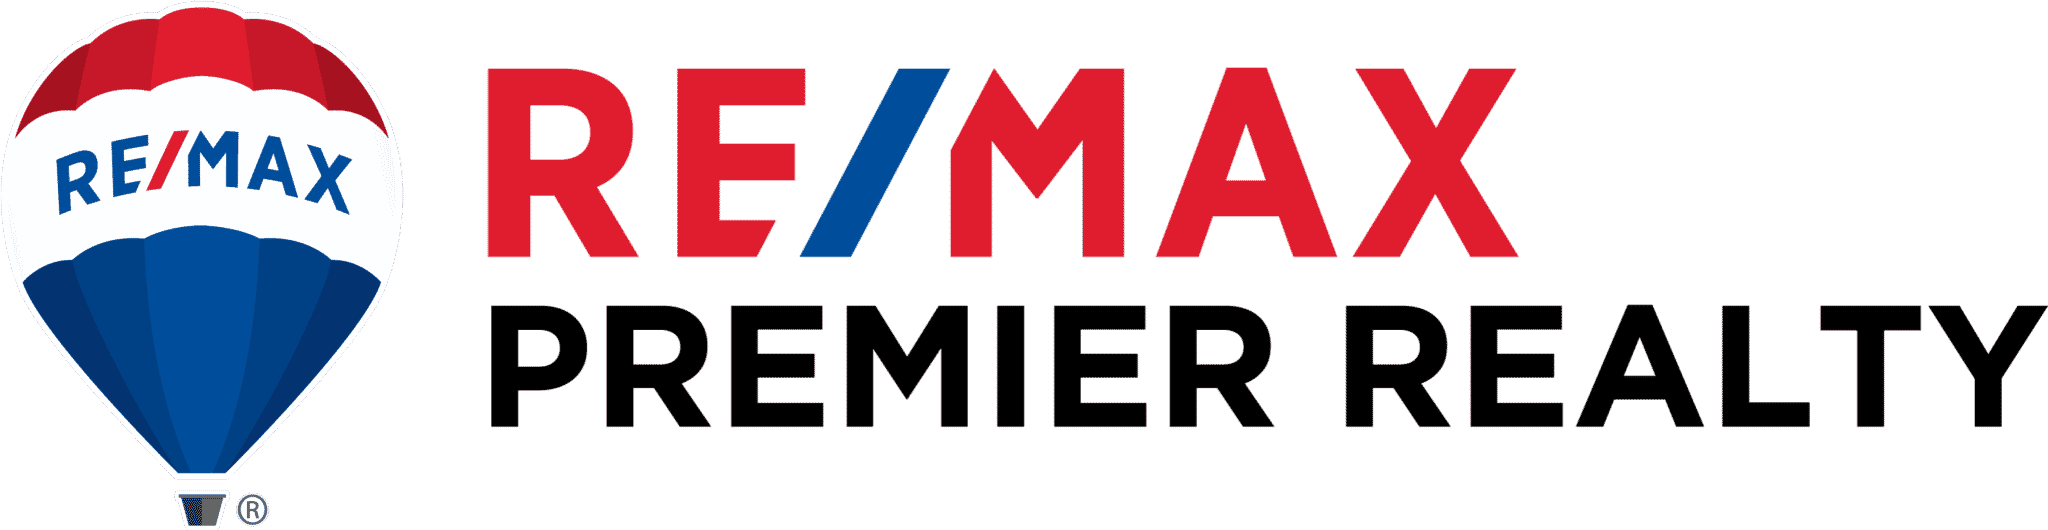 Remax Premiere Reality Logo